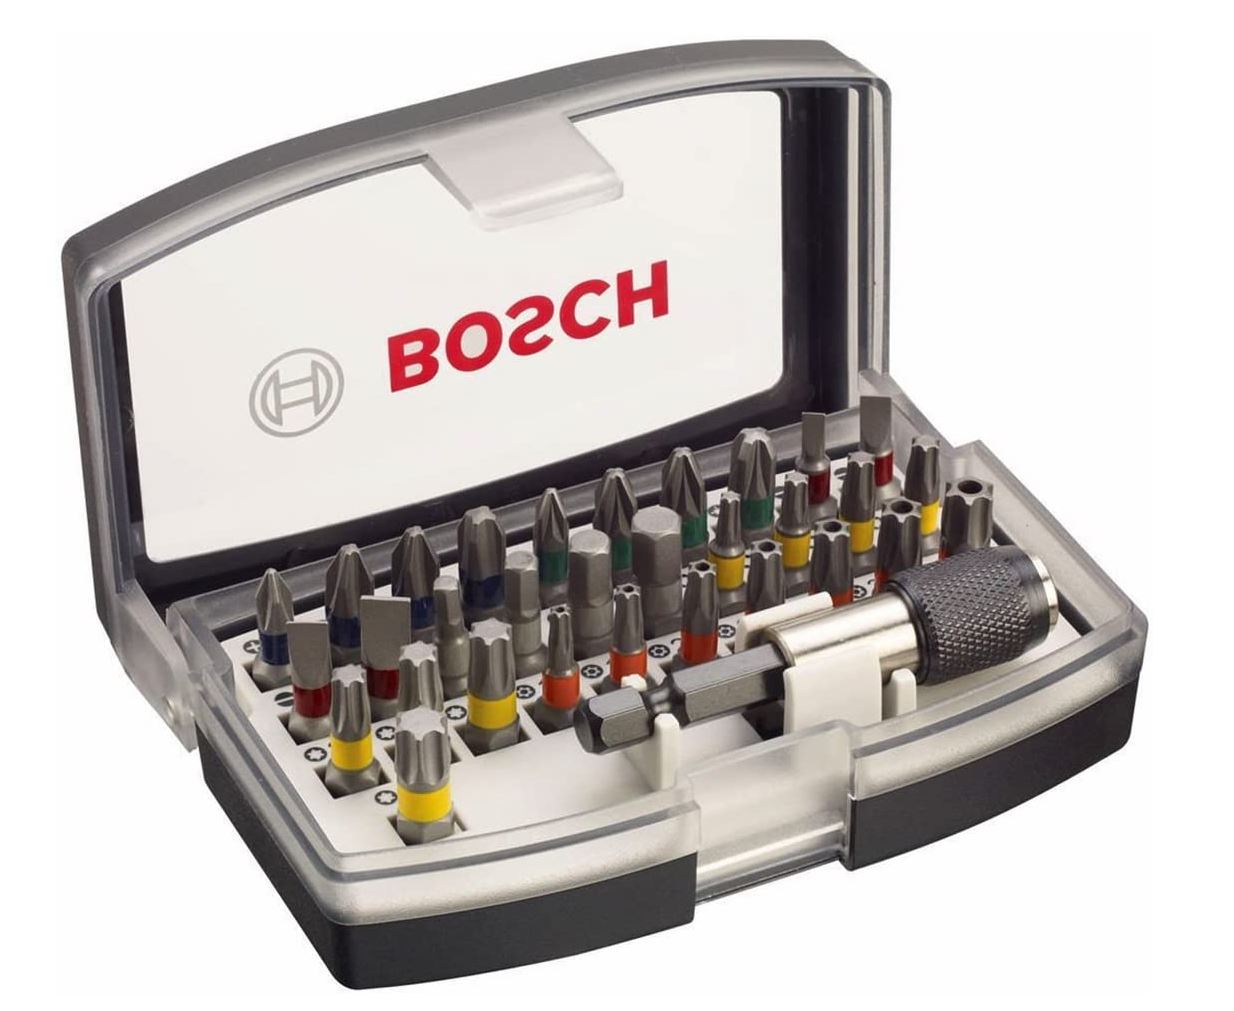 32-teiliges Bosch Professional Schrauberbit-Set für nur 8,76€ (statt 12,20€) – Prime